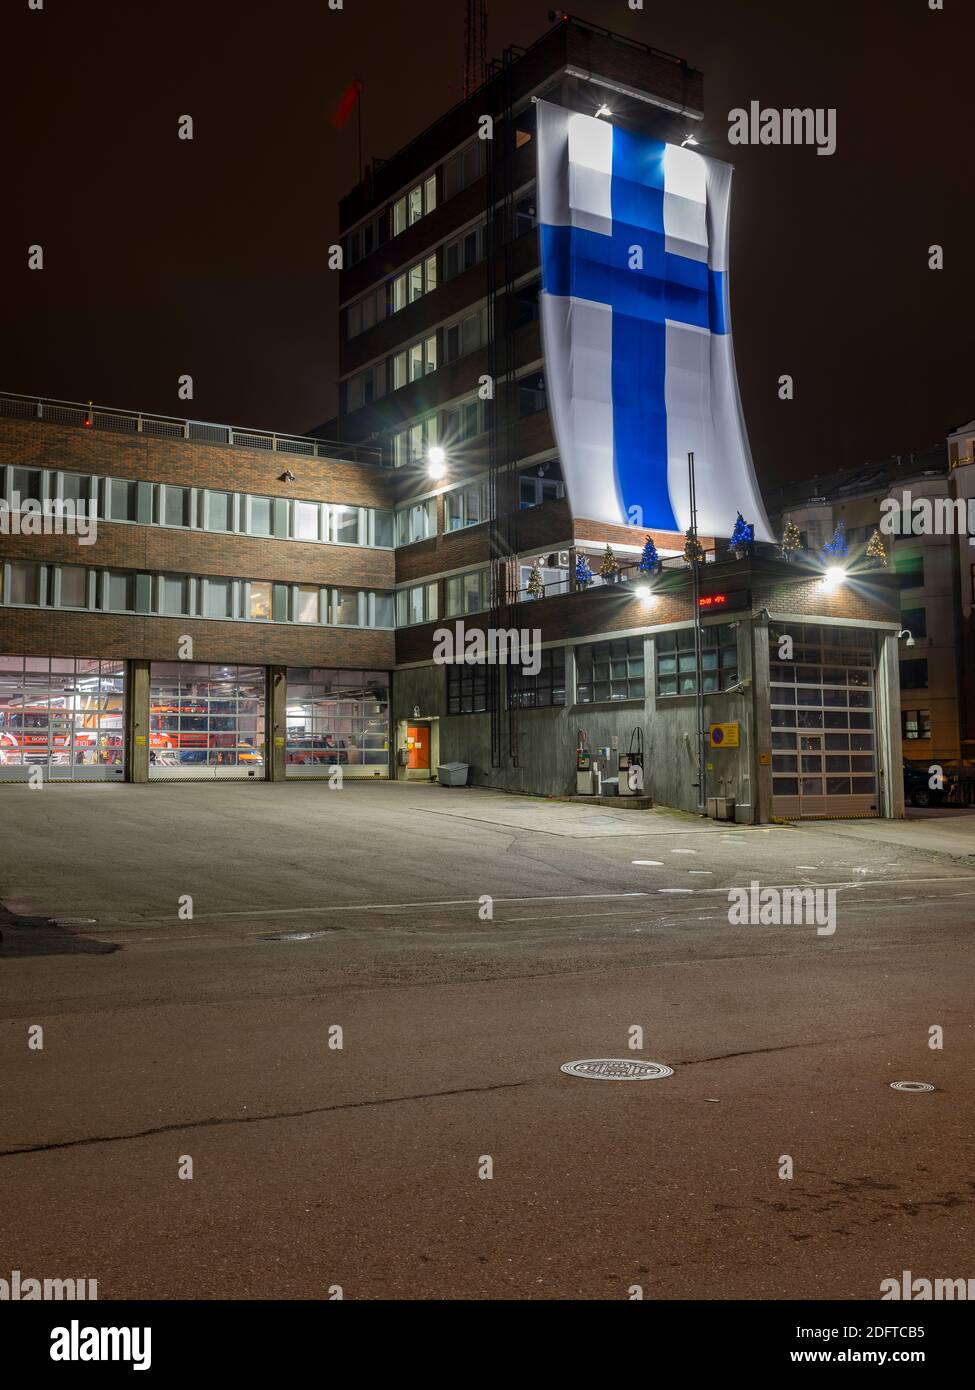 Helsinki / Finlandia - 6 dicembre 2020: Il dipartimento di soccorso e fuoco della città di Helsinki ha celebrato la giornata dell'indipendenza finlandese appeso una bandiera gigante ou Foto Stock